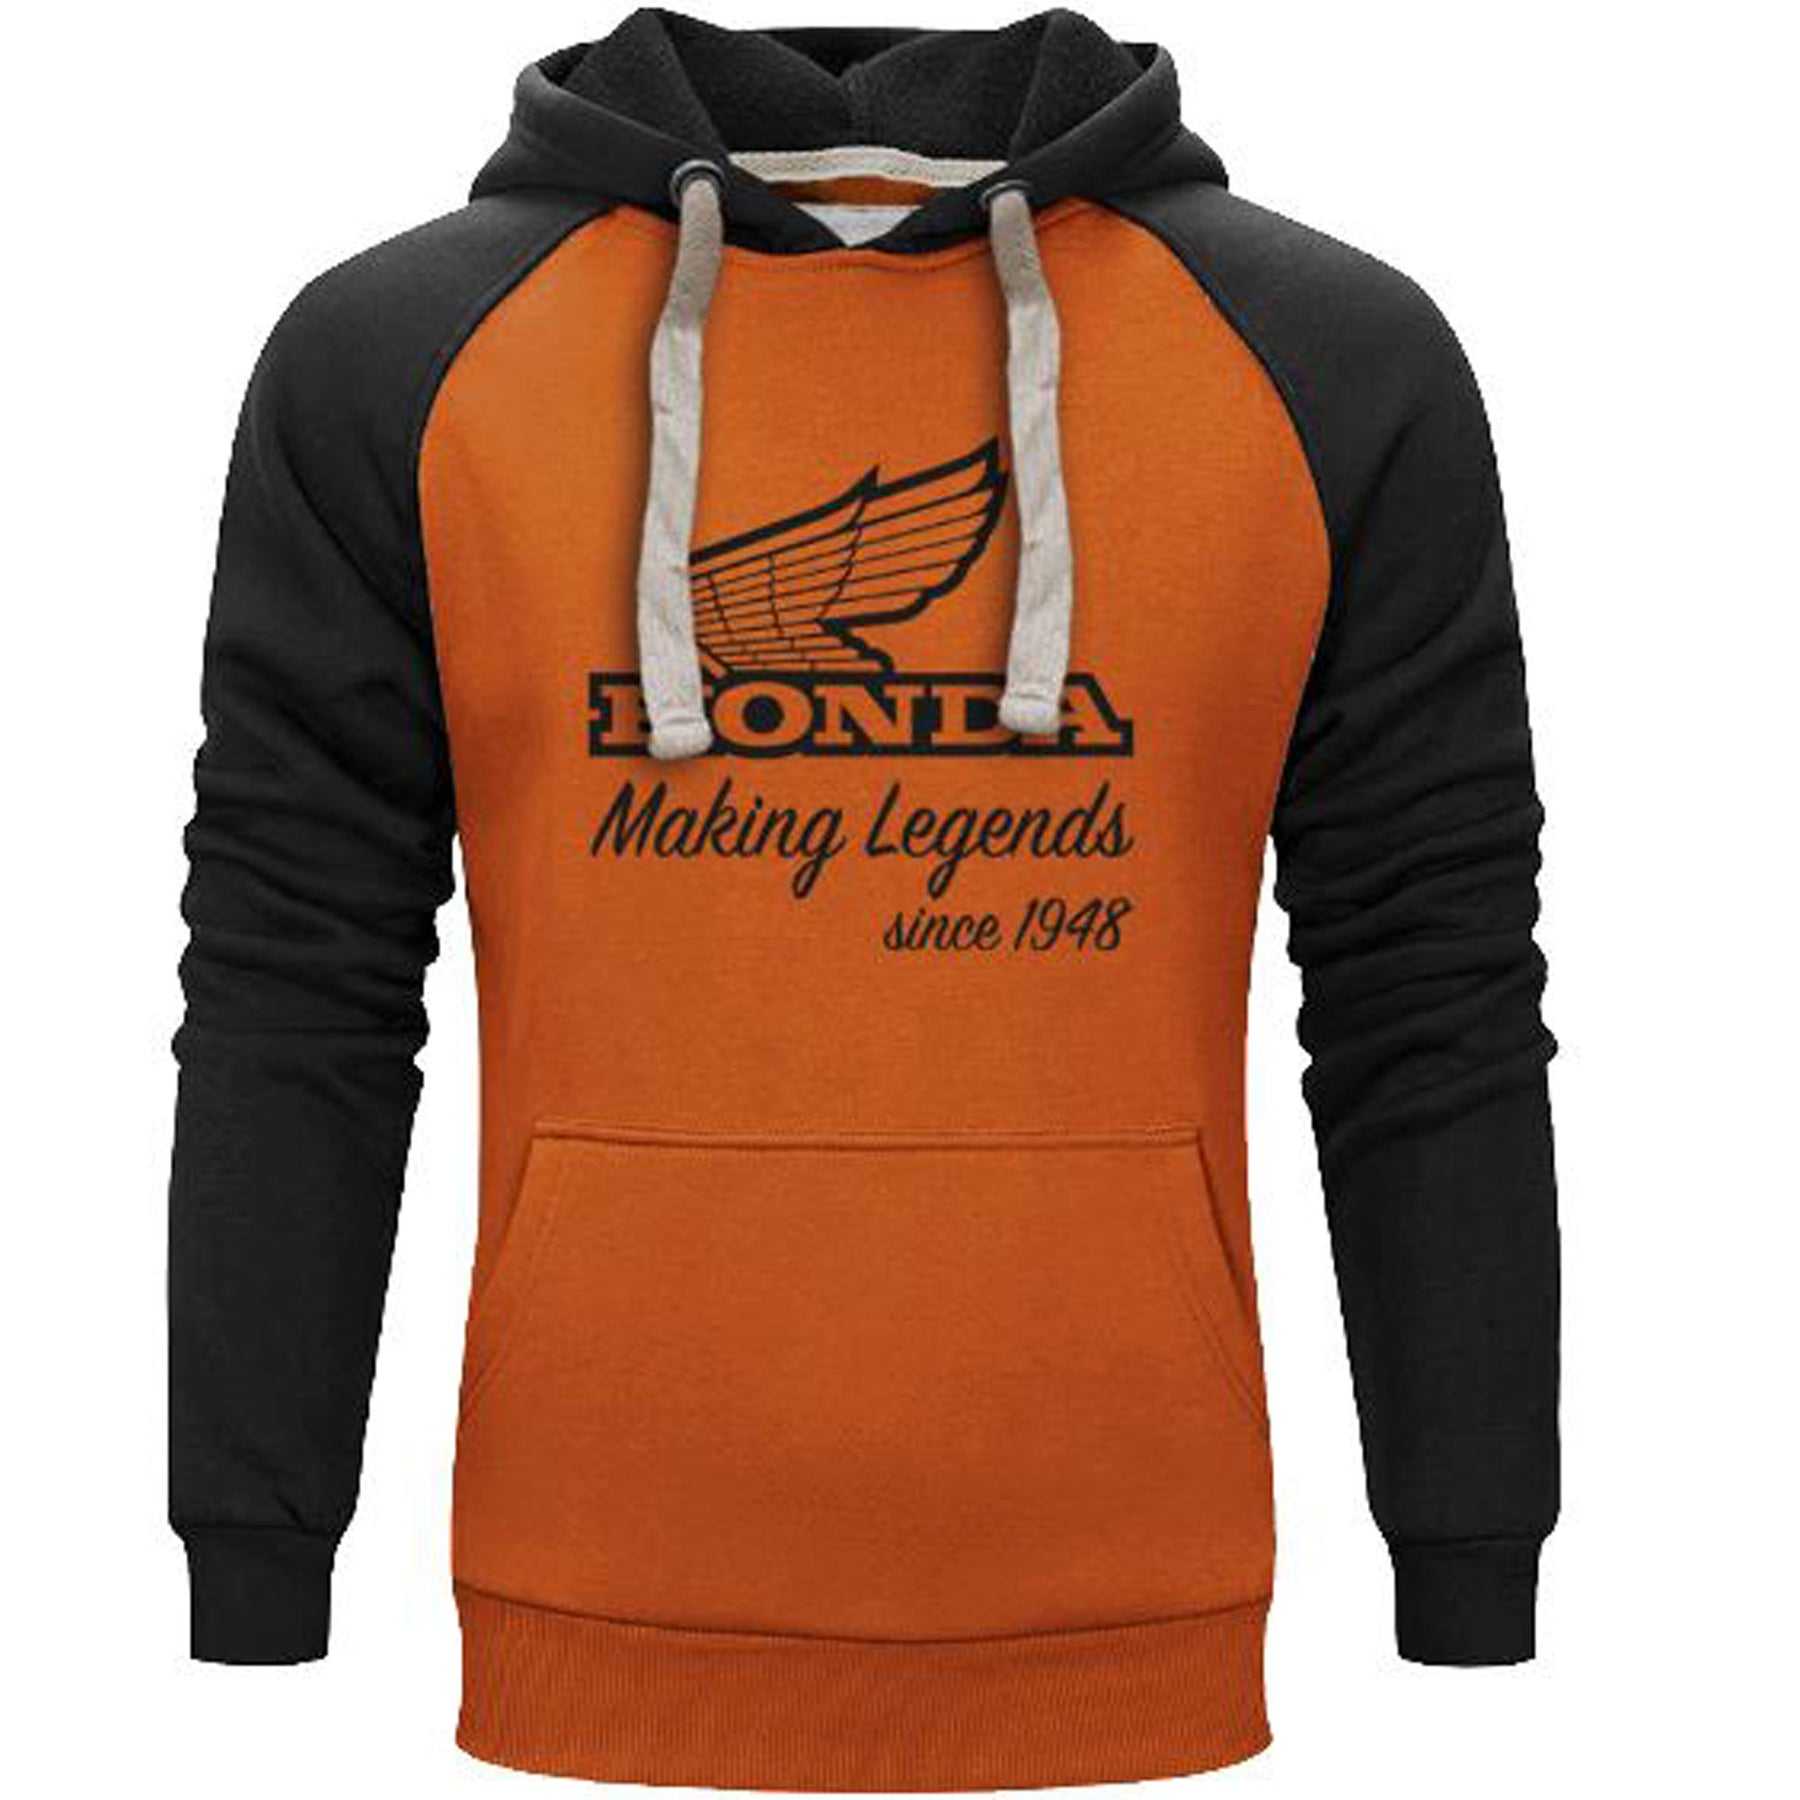 Honda Making Legend Hoodie Black & Orange